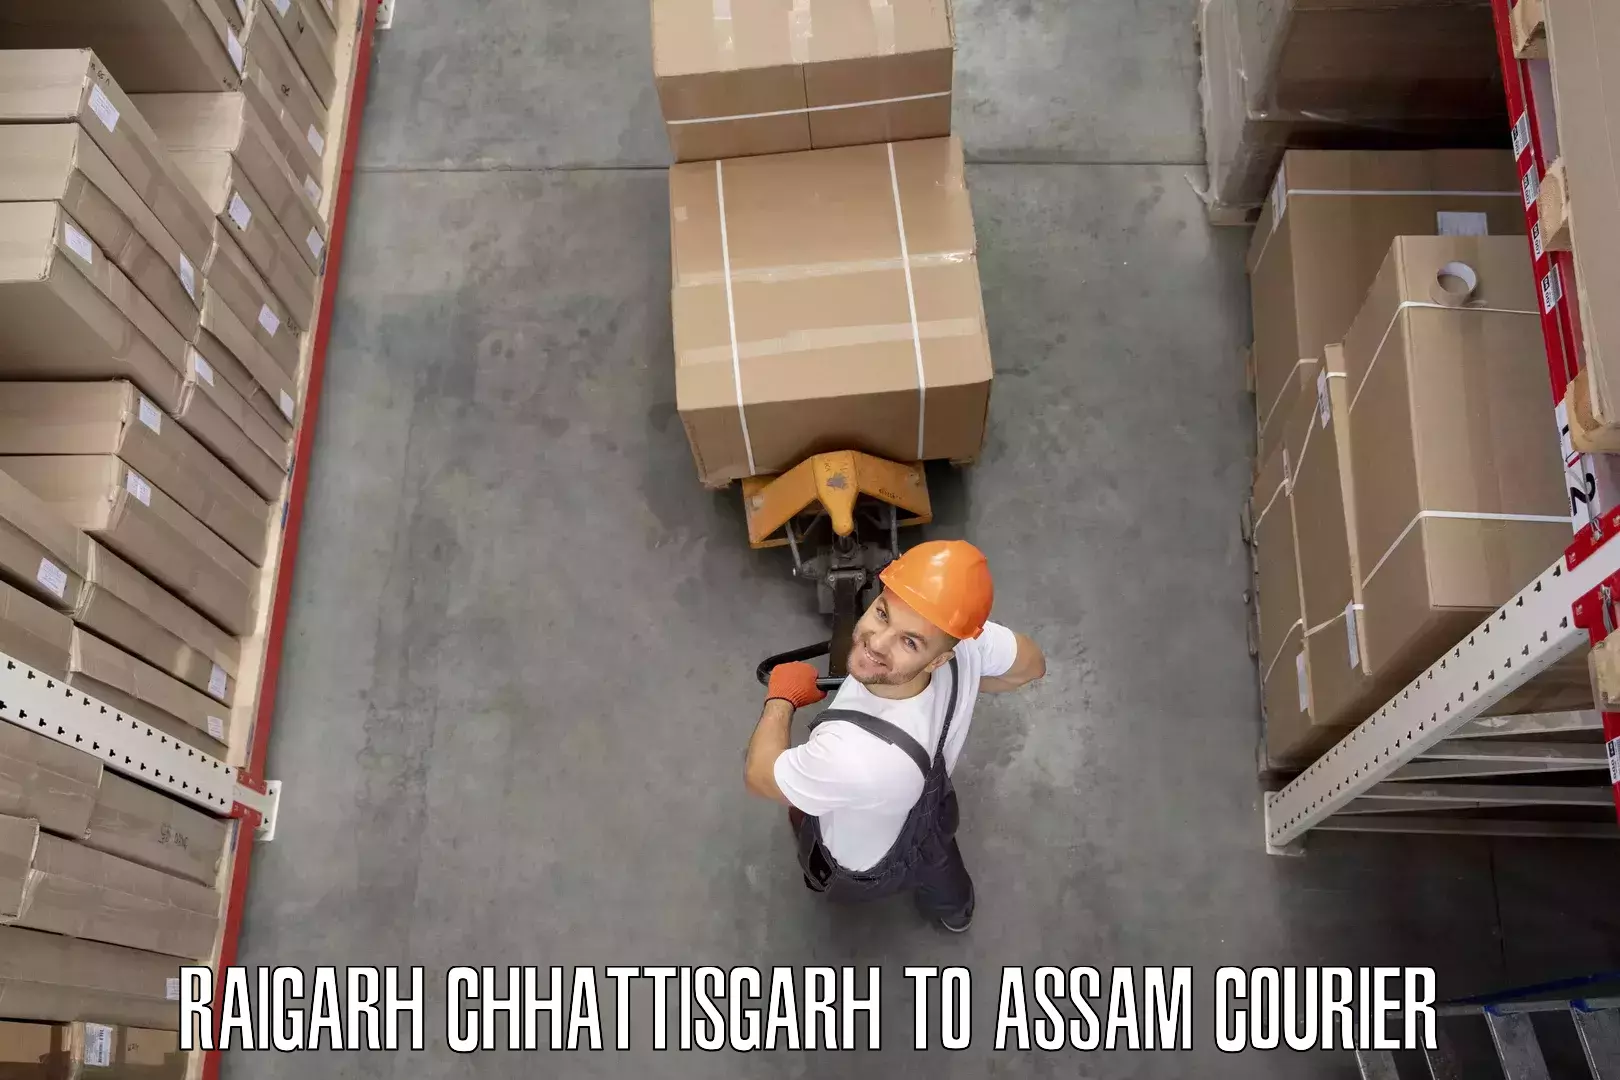 Professional furniture movers Raigarh Chhattisgarh to Hailakandi